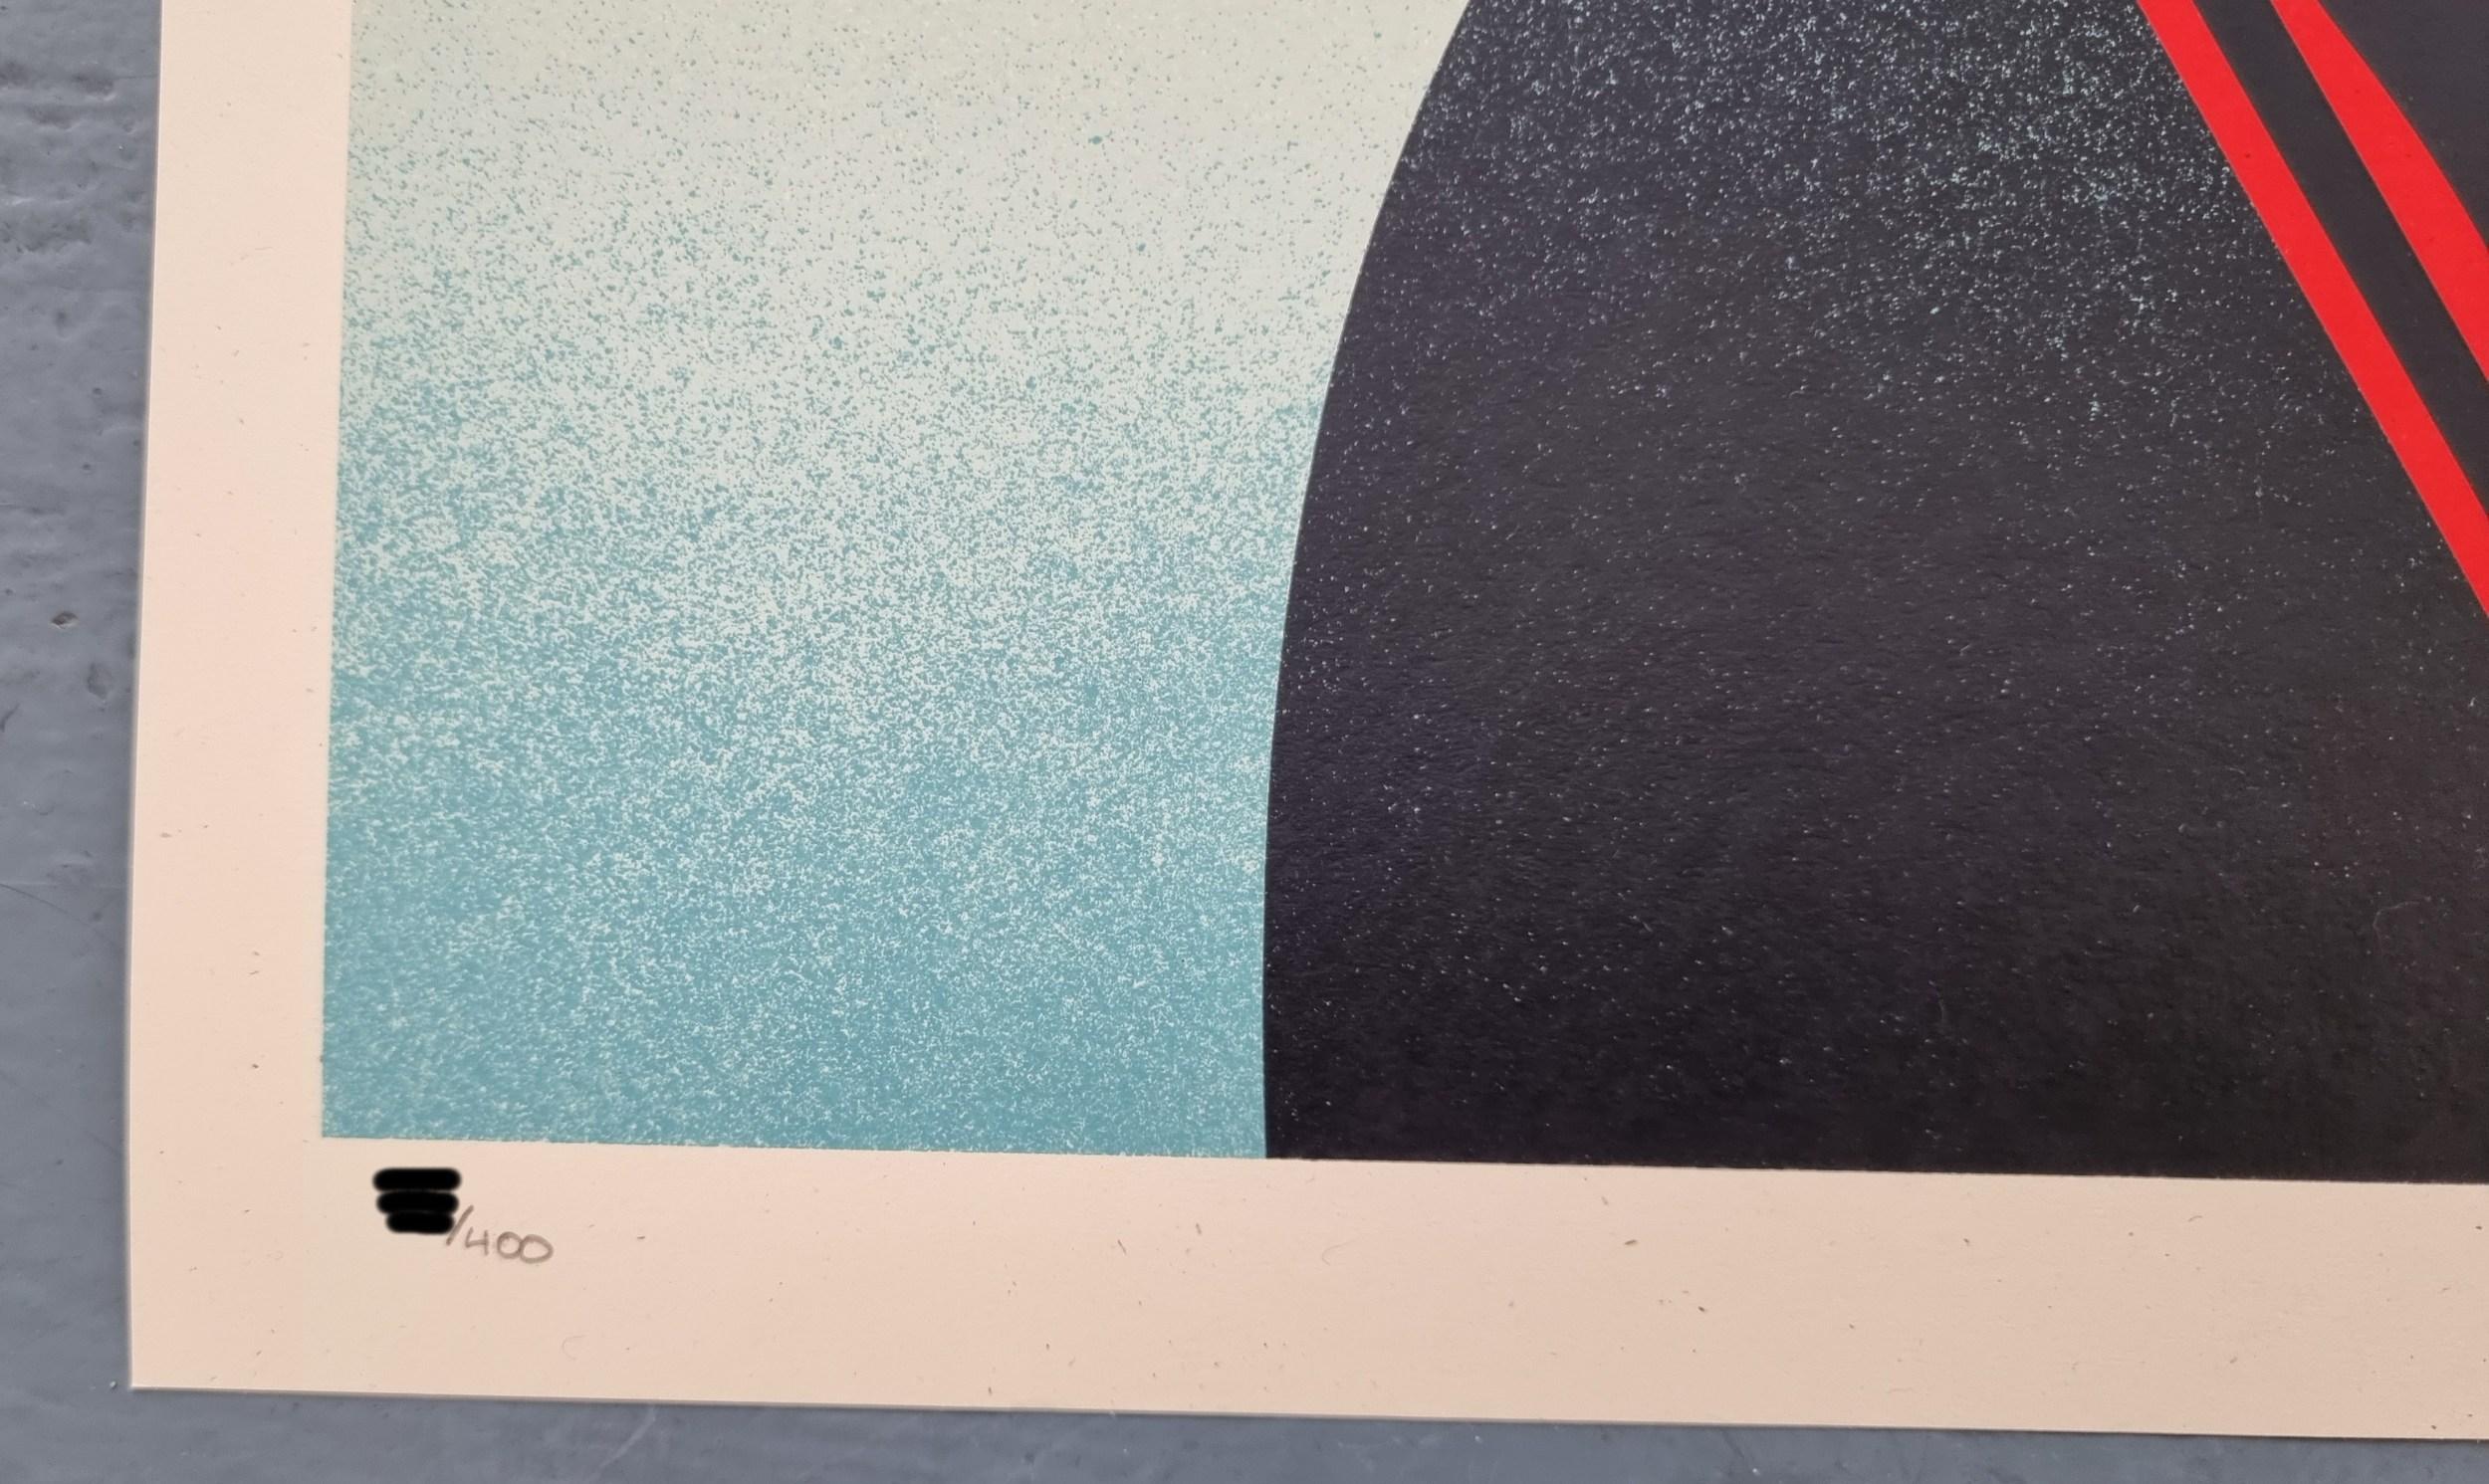 Shepard Fairey
Noir Flower Frauen (Blau)
Siebdruck auf dickem cremefarbenen Speckletone-Papier
Jahr: 2022
Größe: 24 x 18 Zoll
Auflage: 400
Signiert, datiert und von Hand nummeriert
COA bereitgestellt
Ref.: 924802-831



Frank Shepard Fairey (geboren